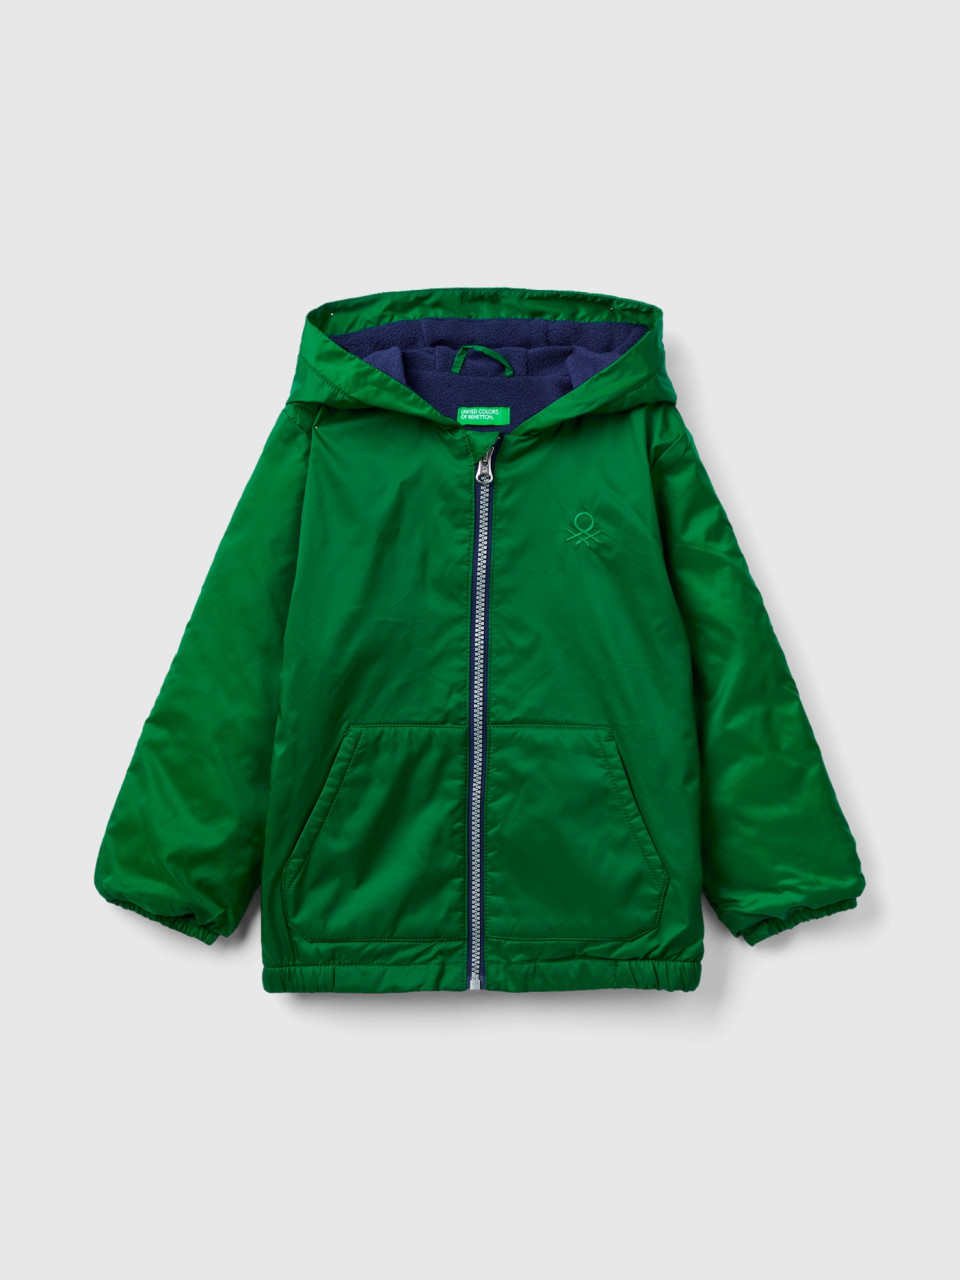 Benetton, Jacket With Oversized Hood, Green, Kids